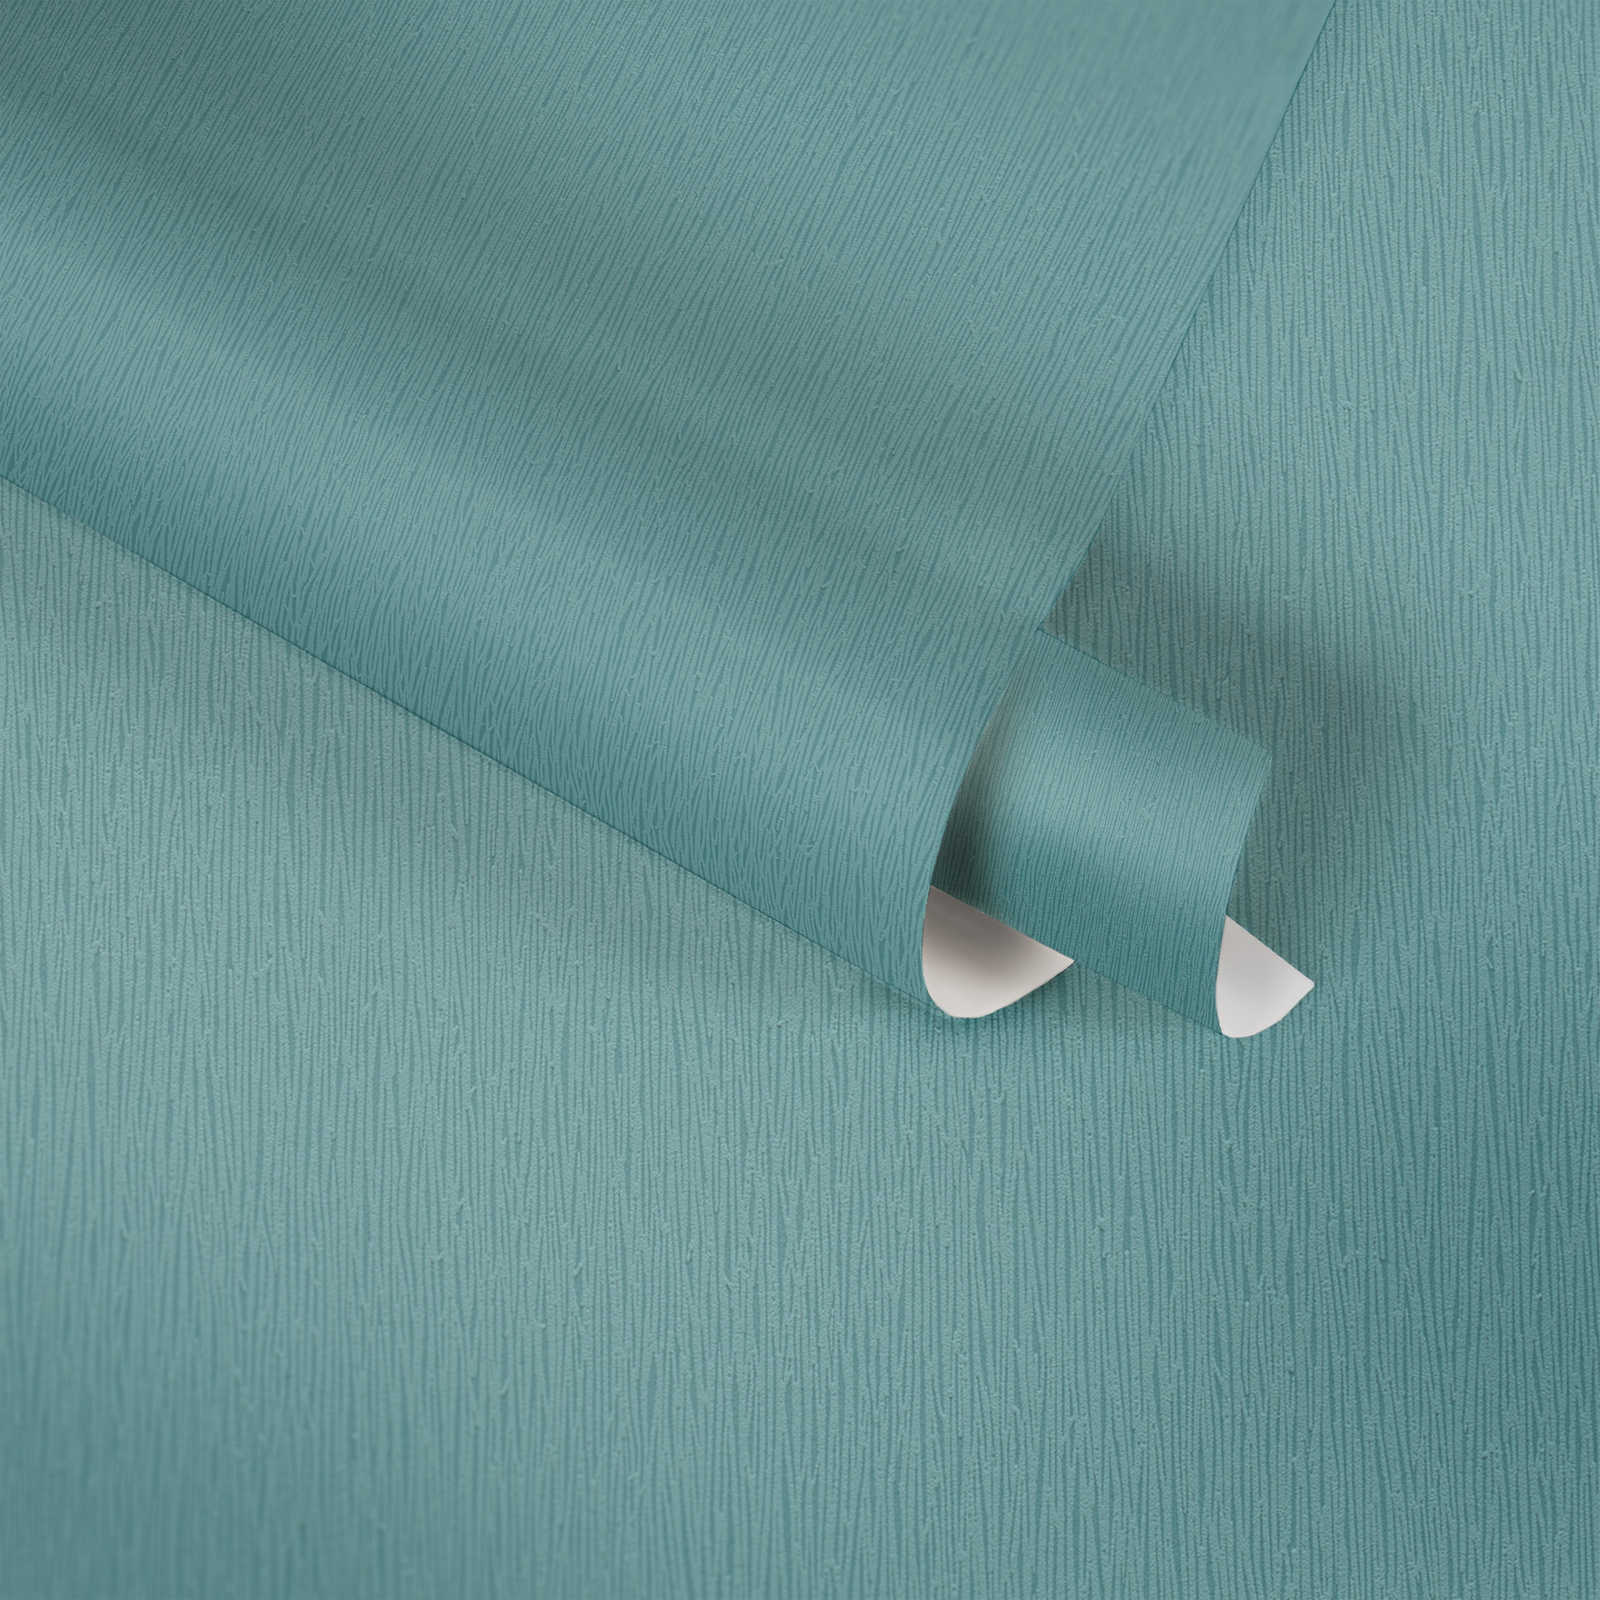             Vliesbehang turquoise met natuurlijk ton sur ton structuurpatroon - blauw, groen
        